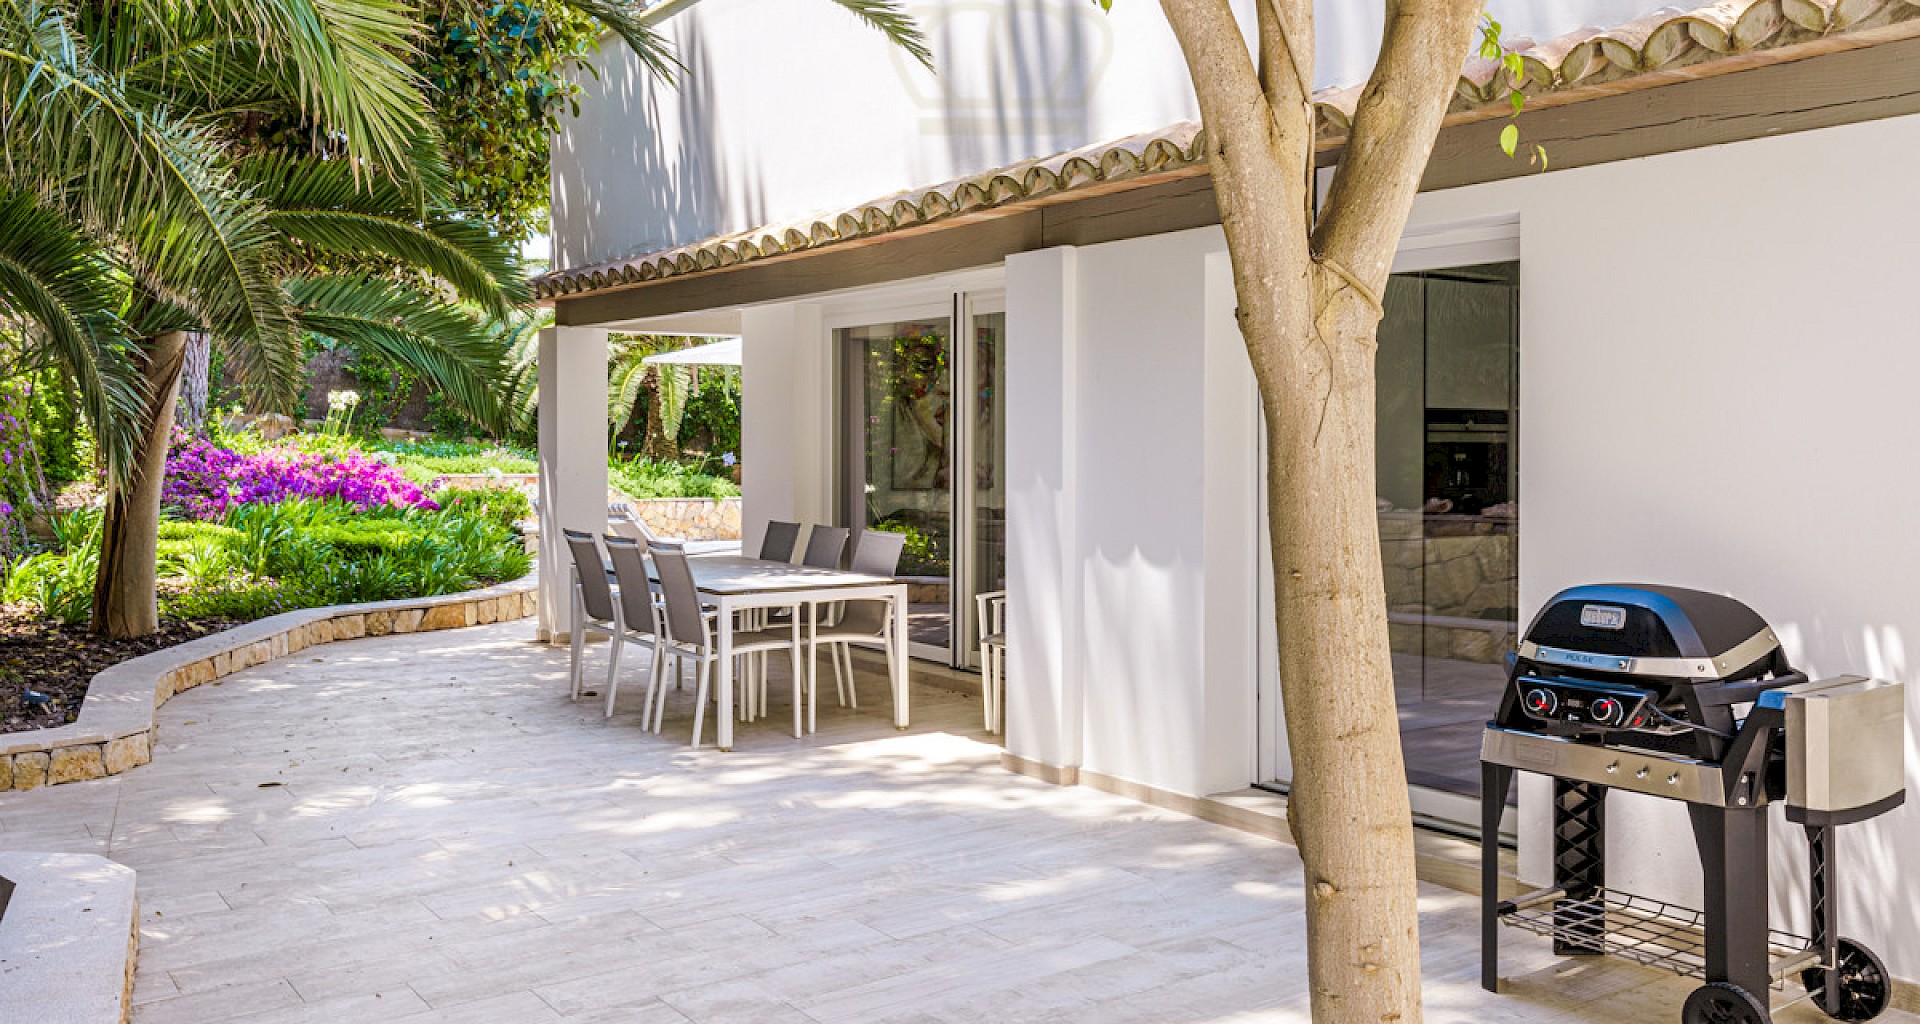 KROHN & LUEDEMANN Luxury family villa in Santa Ponsa with pool and garden Villa in Santa Ponsa mit Pool und Garten 24